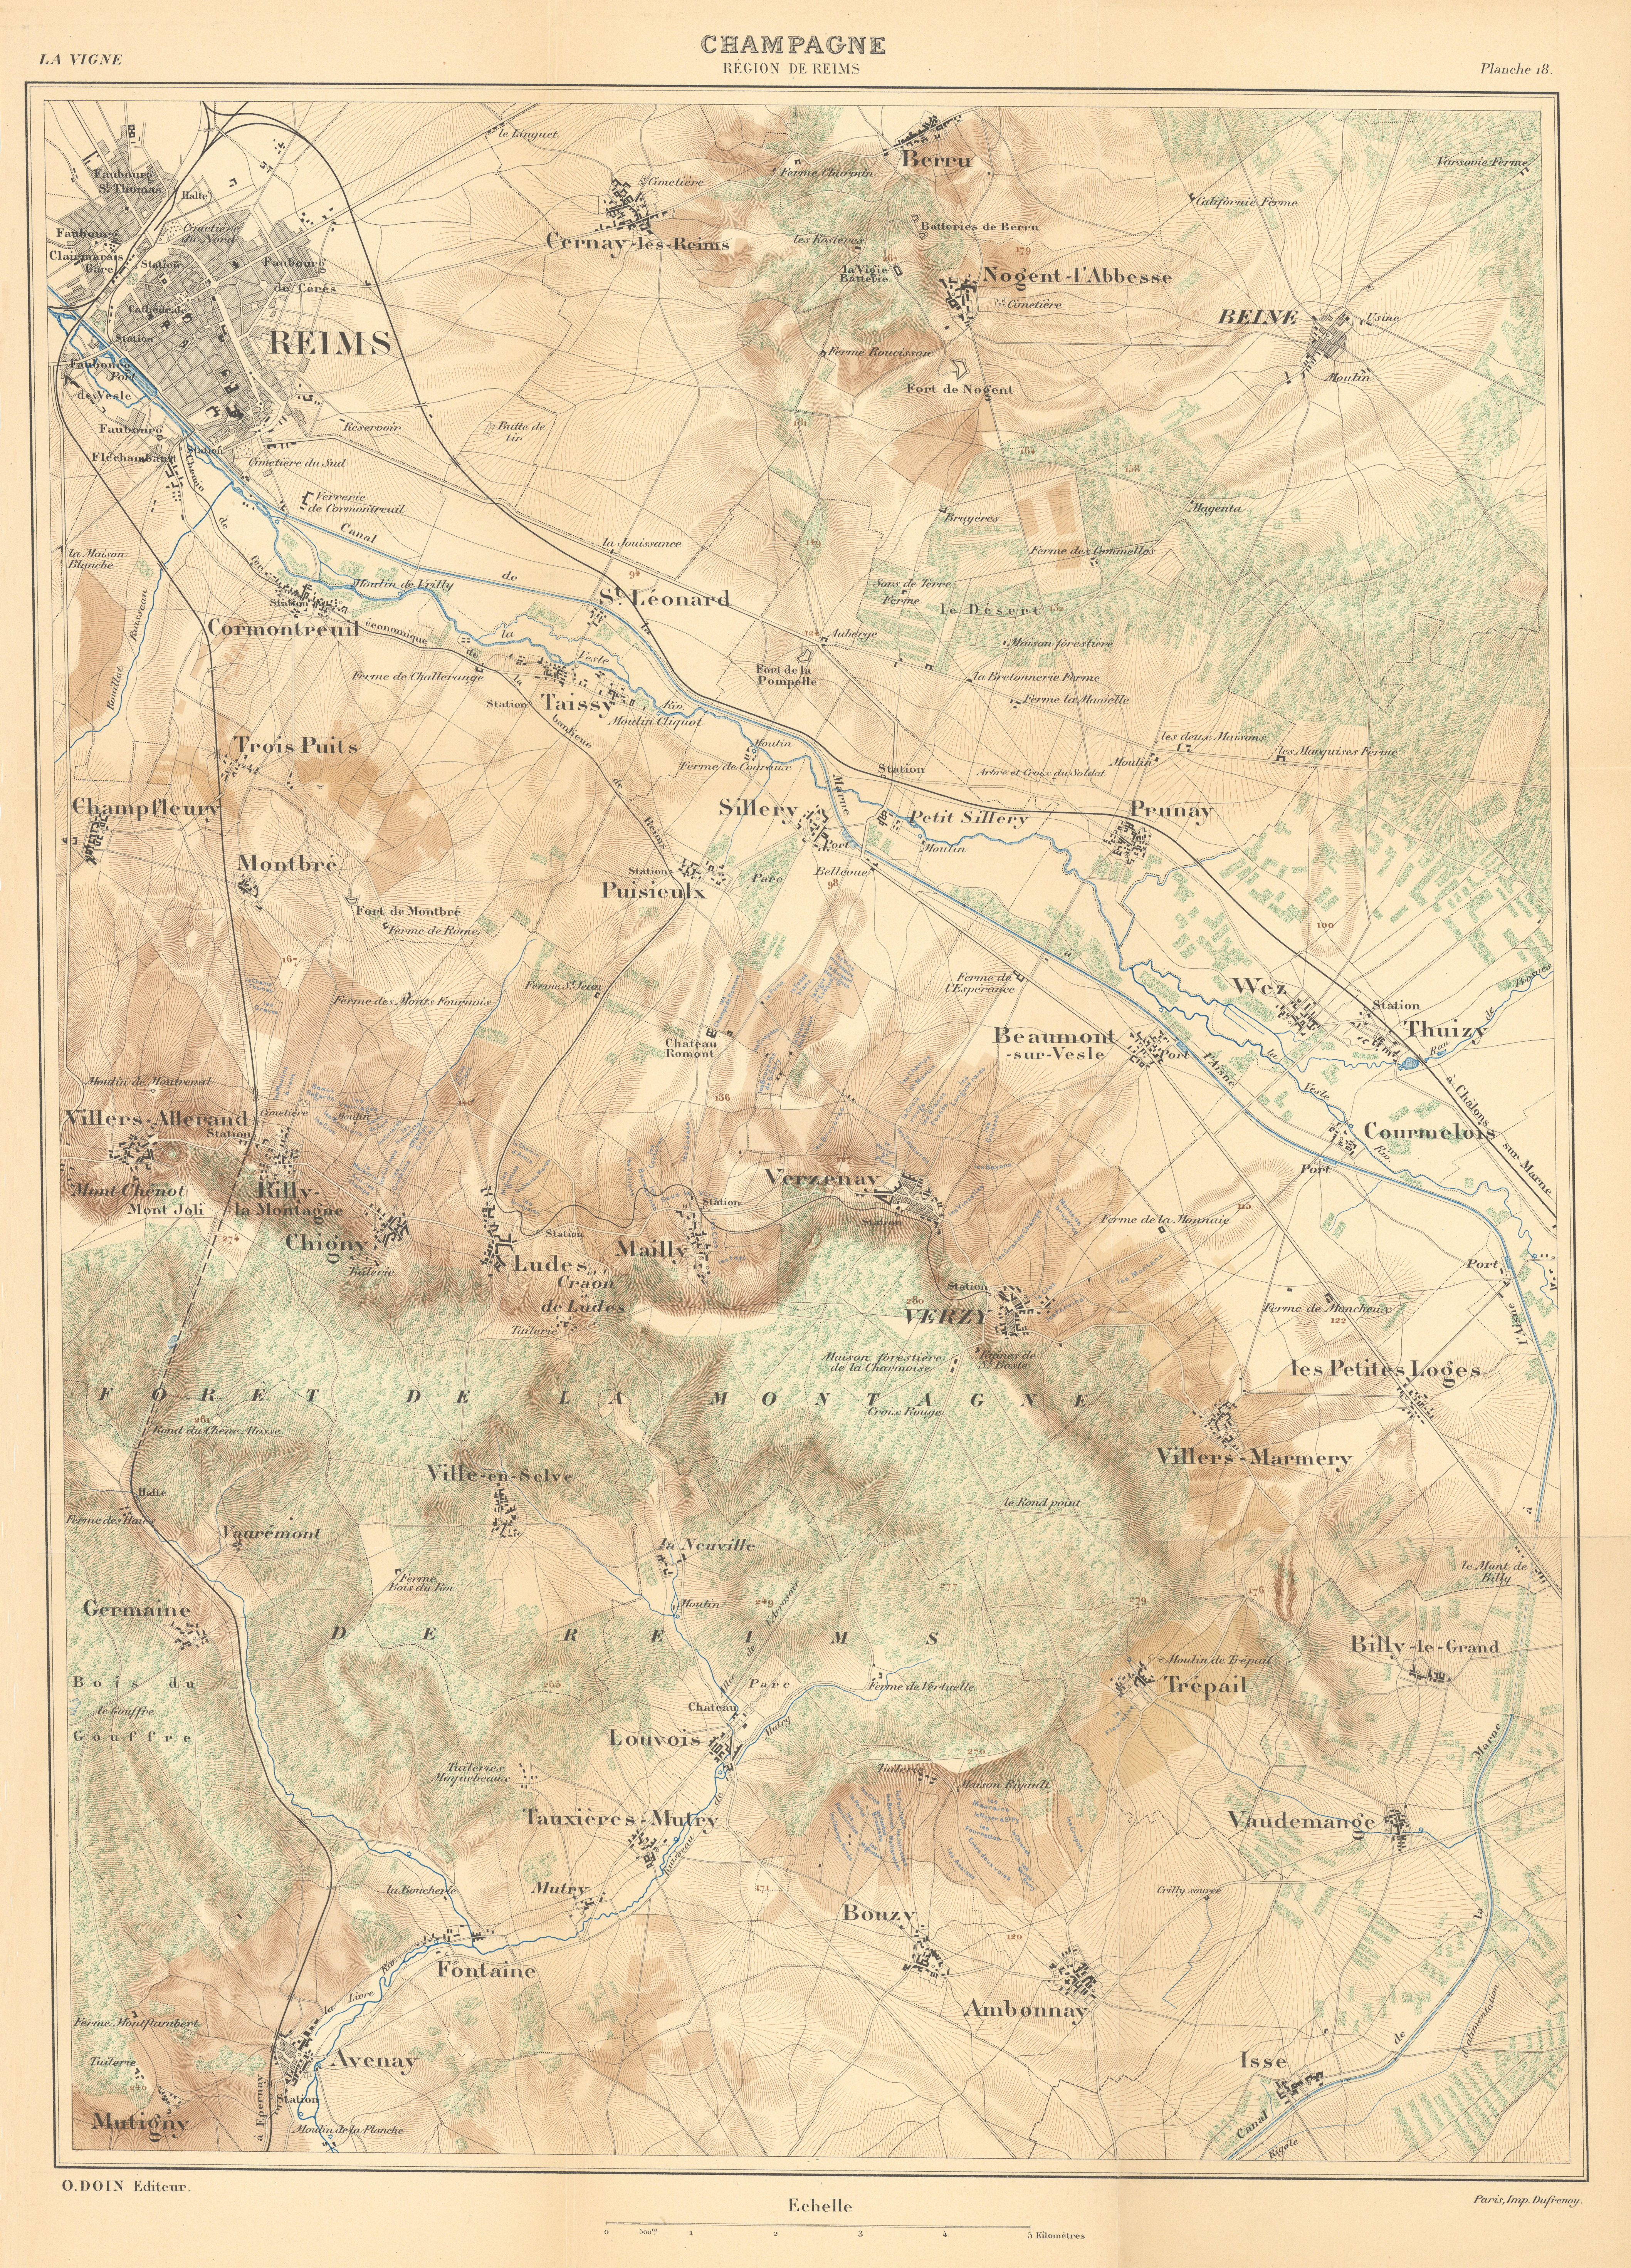 Associate Product Champagne wine map - Région de Reims.  HAUSERMANN 1901 old antique chart